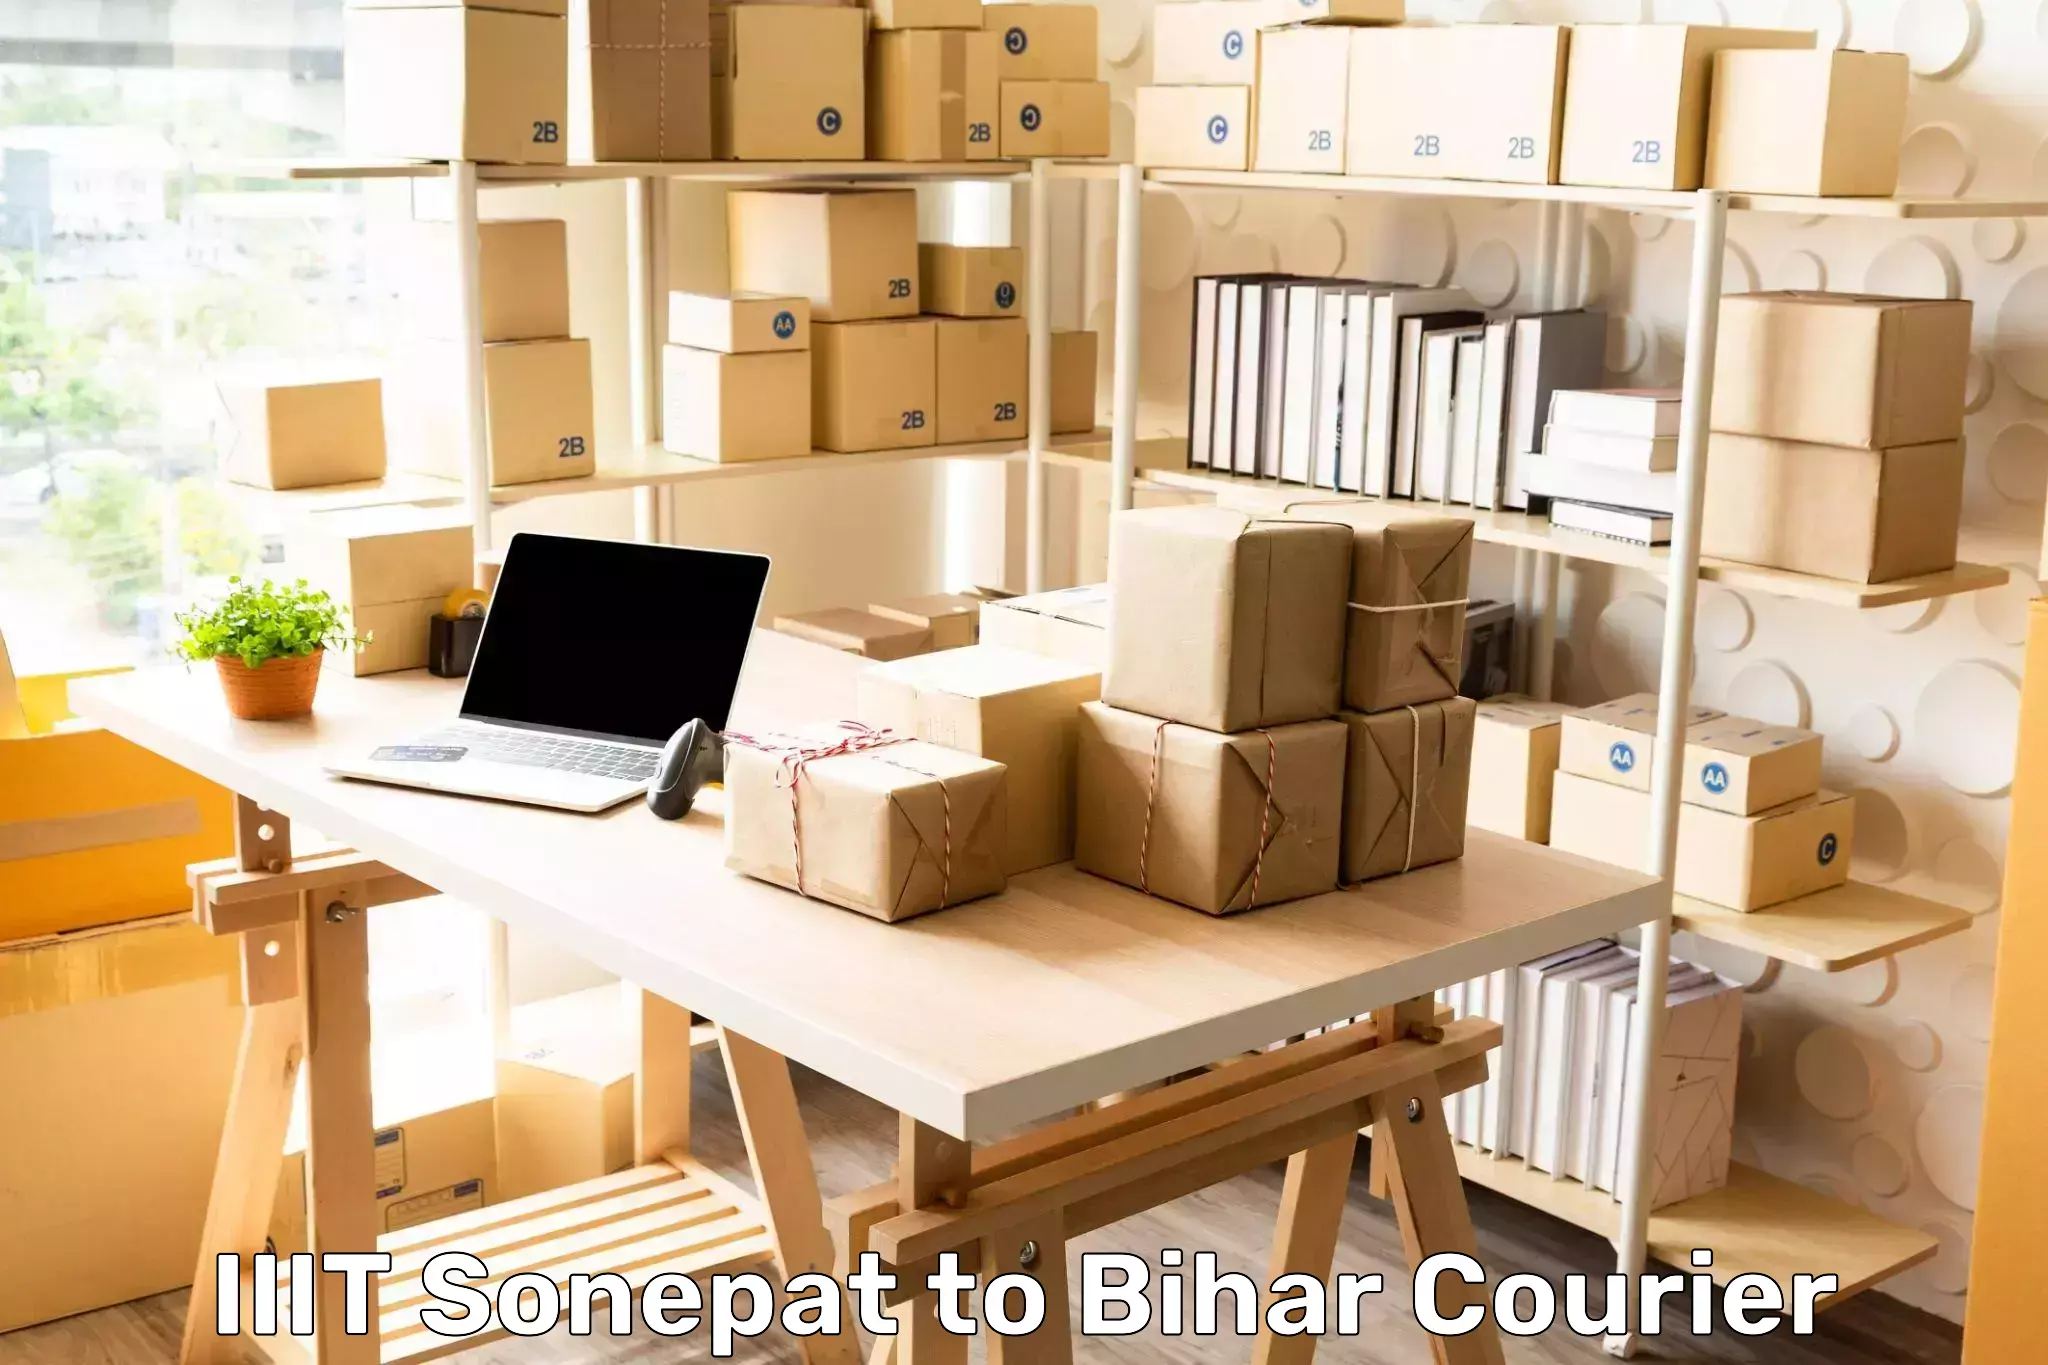 Express postal services IIIT Sonepat to Bihar